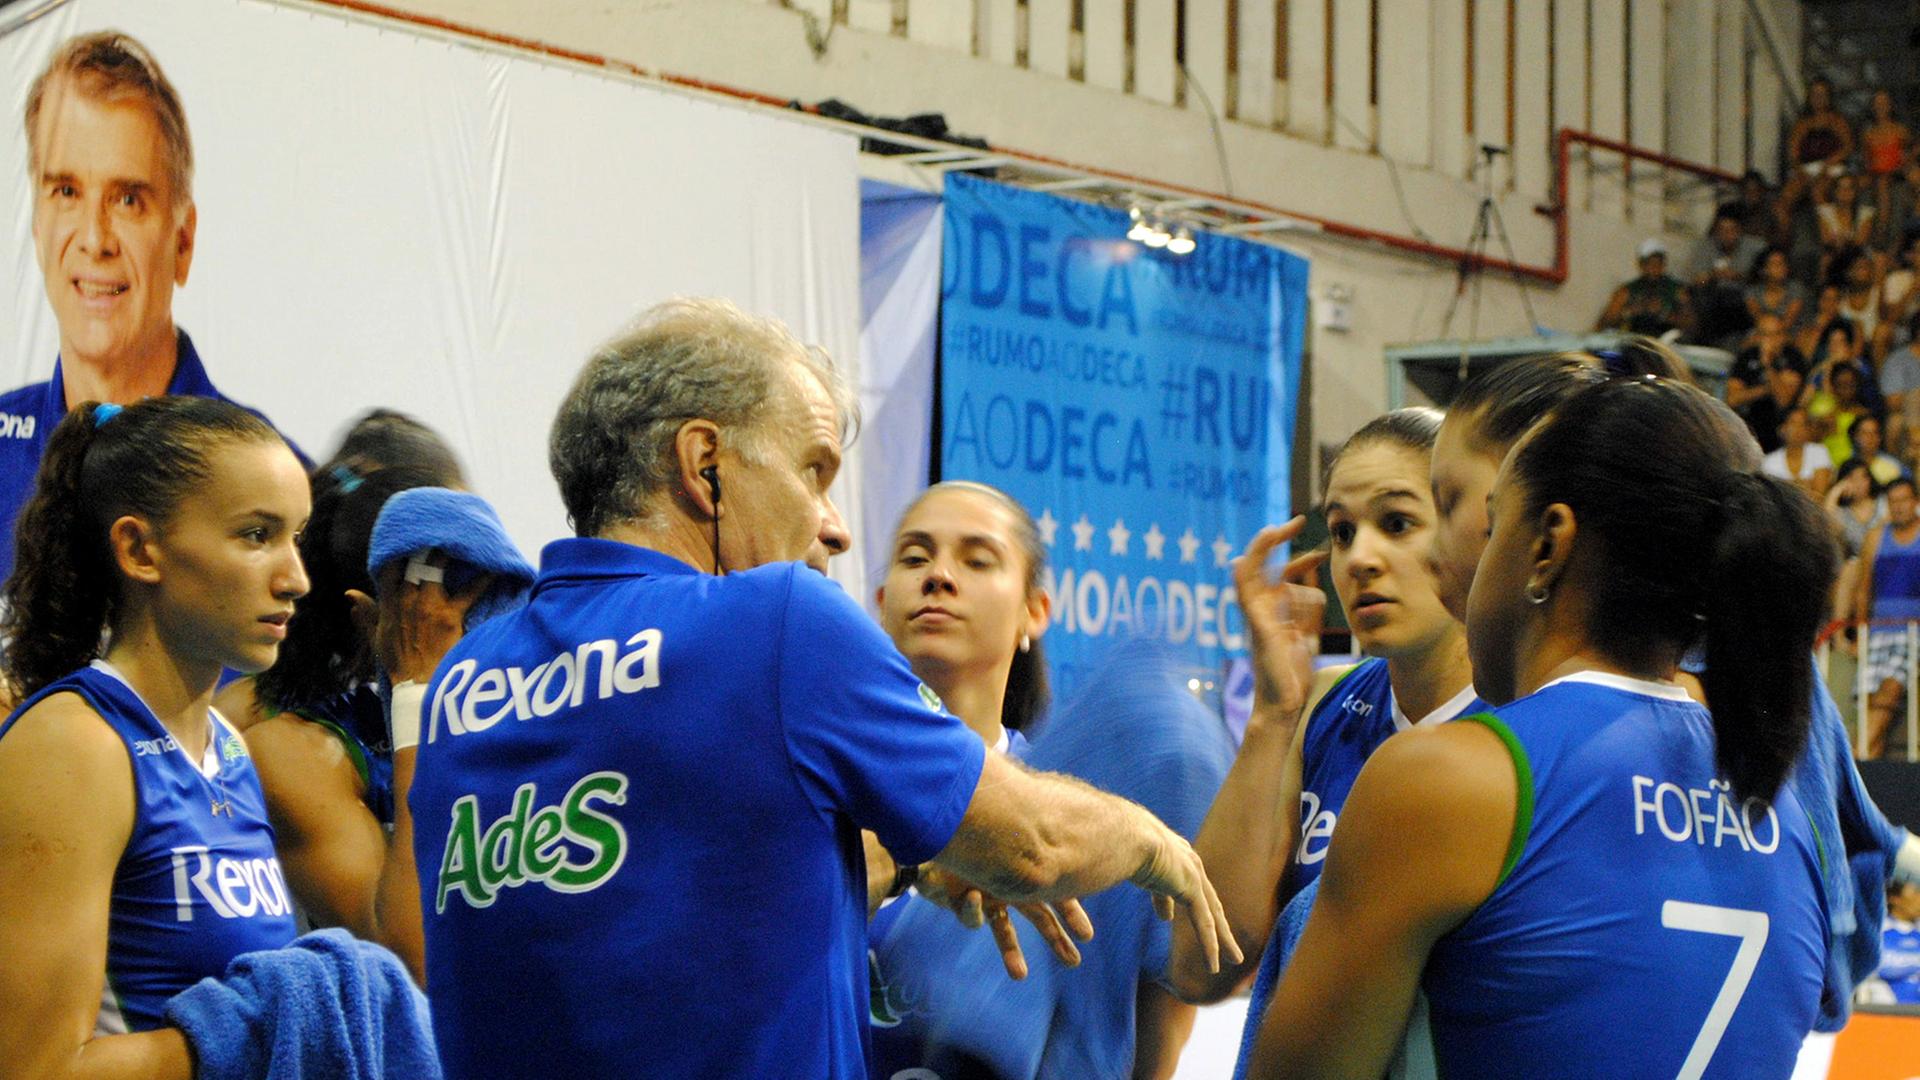 Brasiliens Nationaltrainer Bernardinho trainiert auch die Volleyball-Damen von Rexona AdeS aus Rio de Janeiro